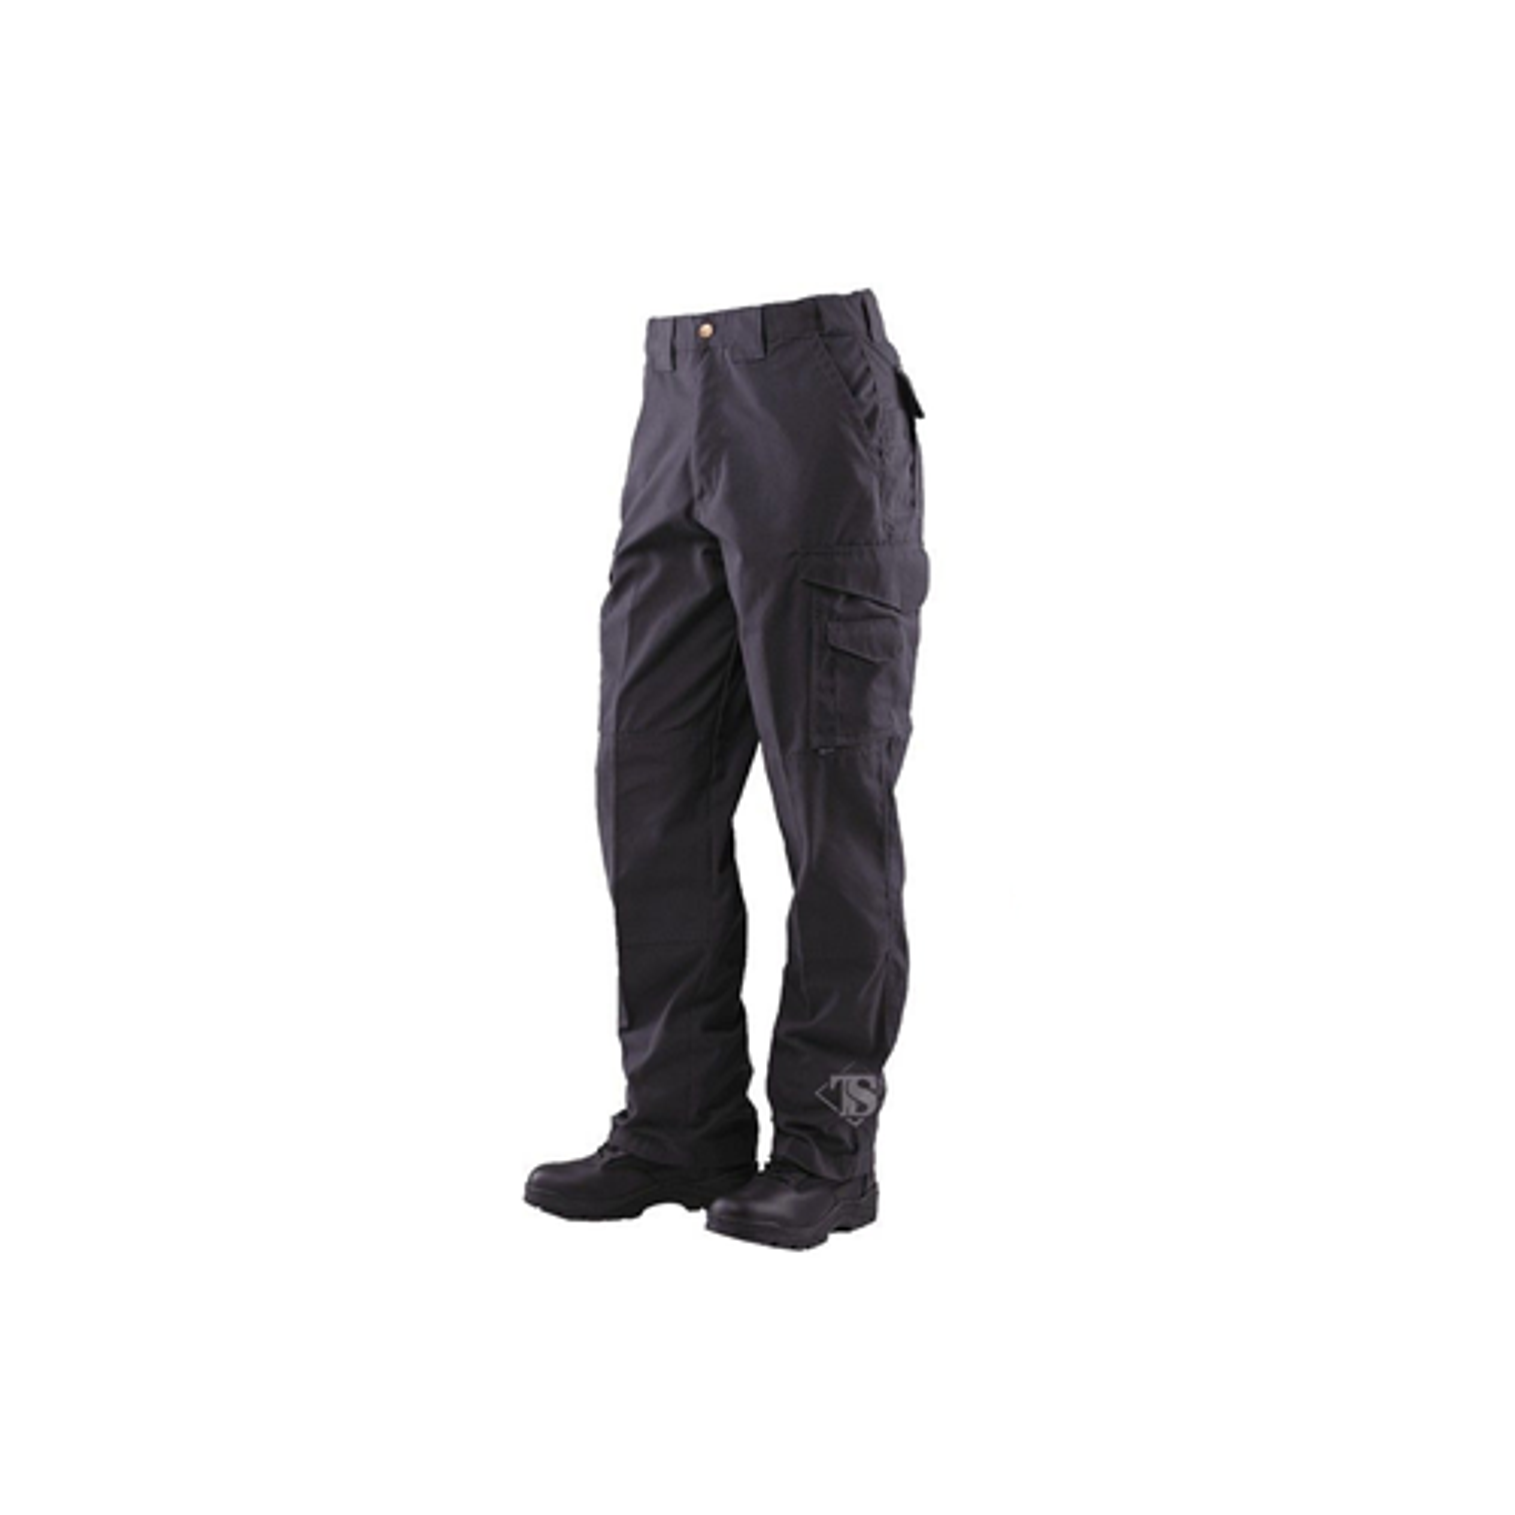 24-7 Original Tactical Pants - 6.5oz - Black